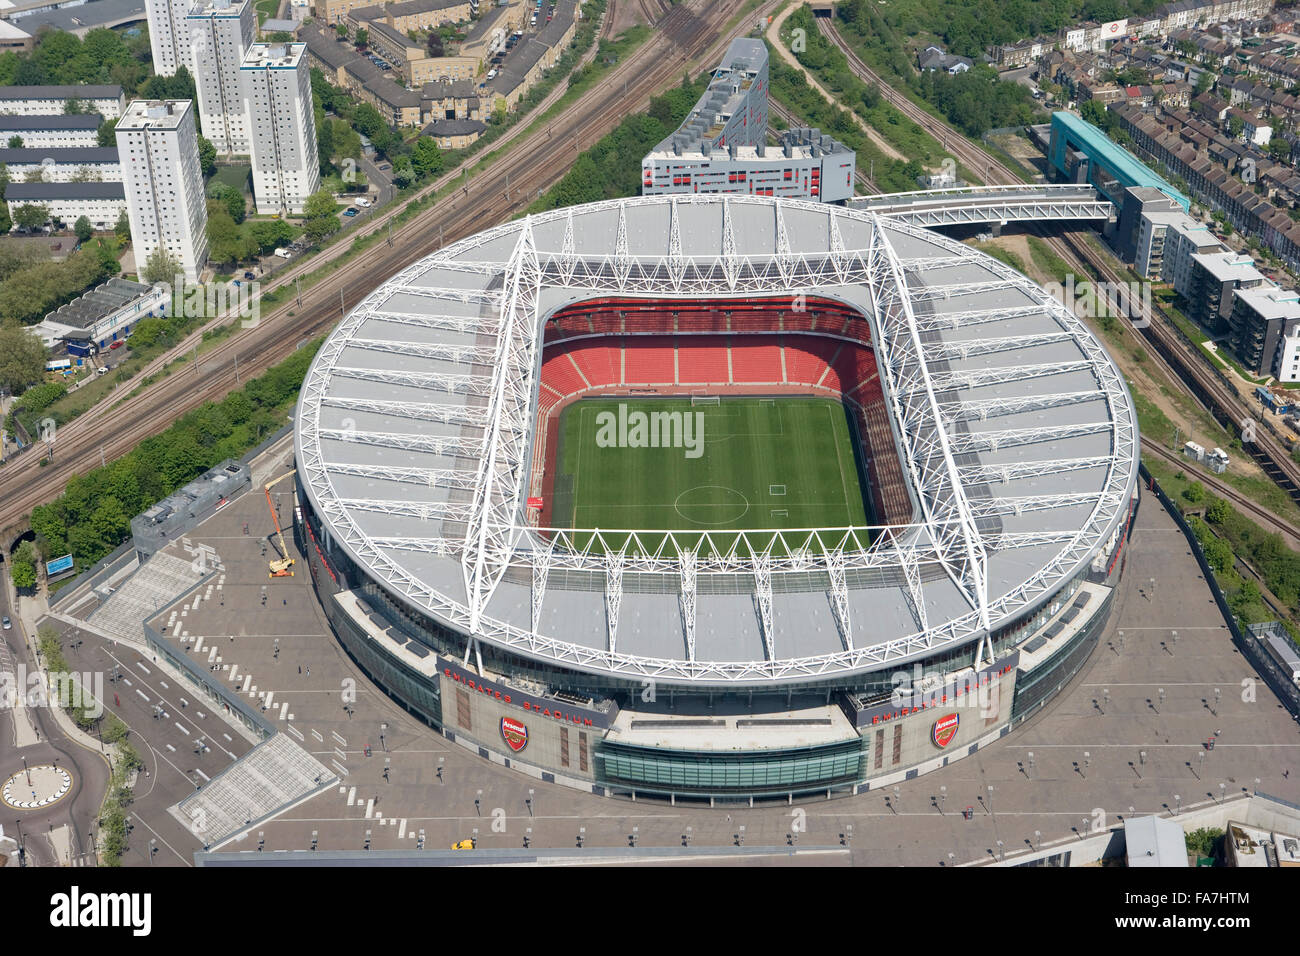 L'Emirates Stadium, Arsenal, à Londres. Vue aérienne. Ouvert en juillet 2006, comme le remplacement de l'Arsenal Football Club Accueil Historique à Highbury. Cette 60, 000 all-assis stadium est situé à Ashburton Grove. Photographié en mai 2008. Banque D'Images